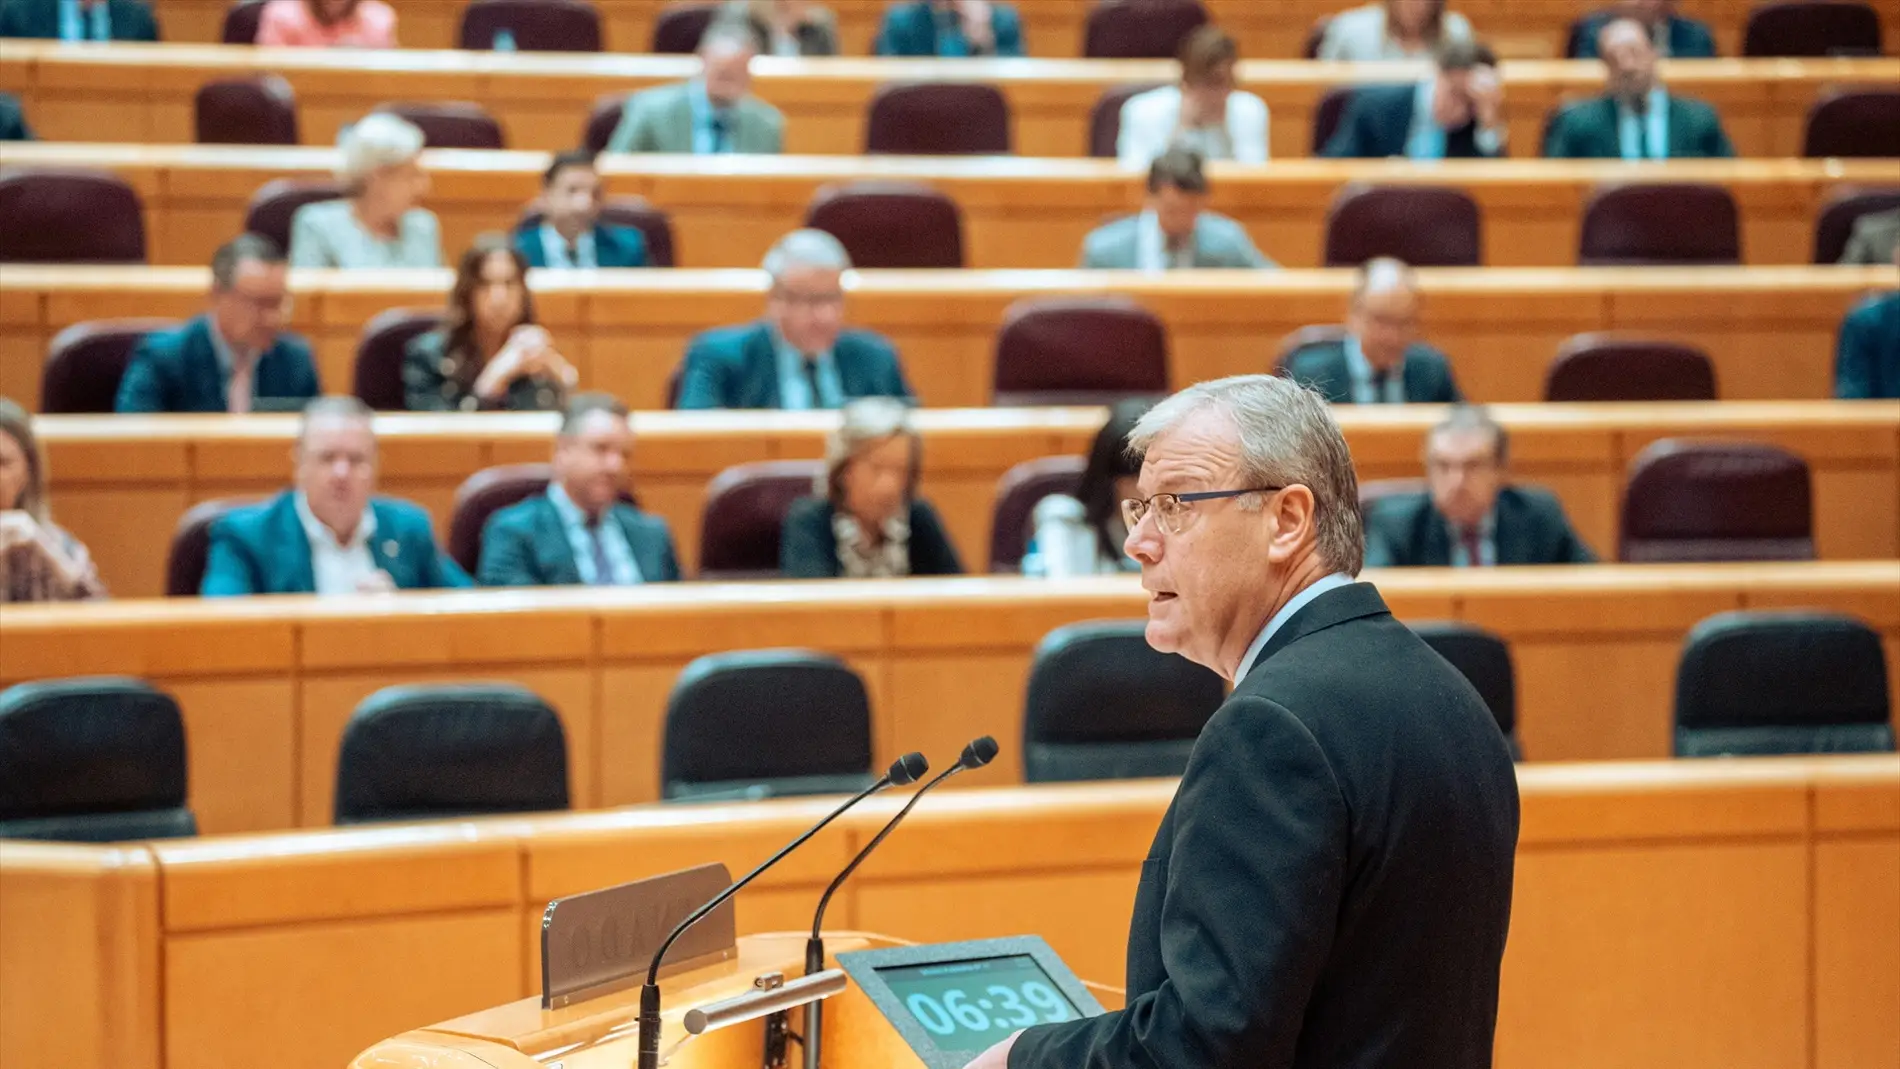 El senador del PP, Antonio Silván, interviene durante una sesión plenaria en el Senado